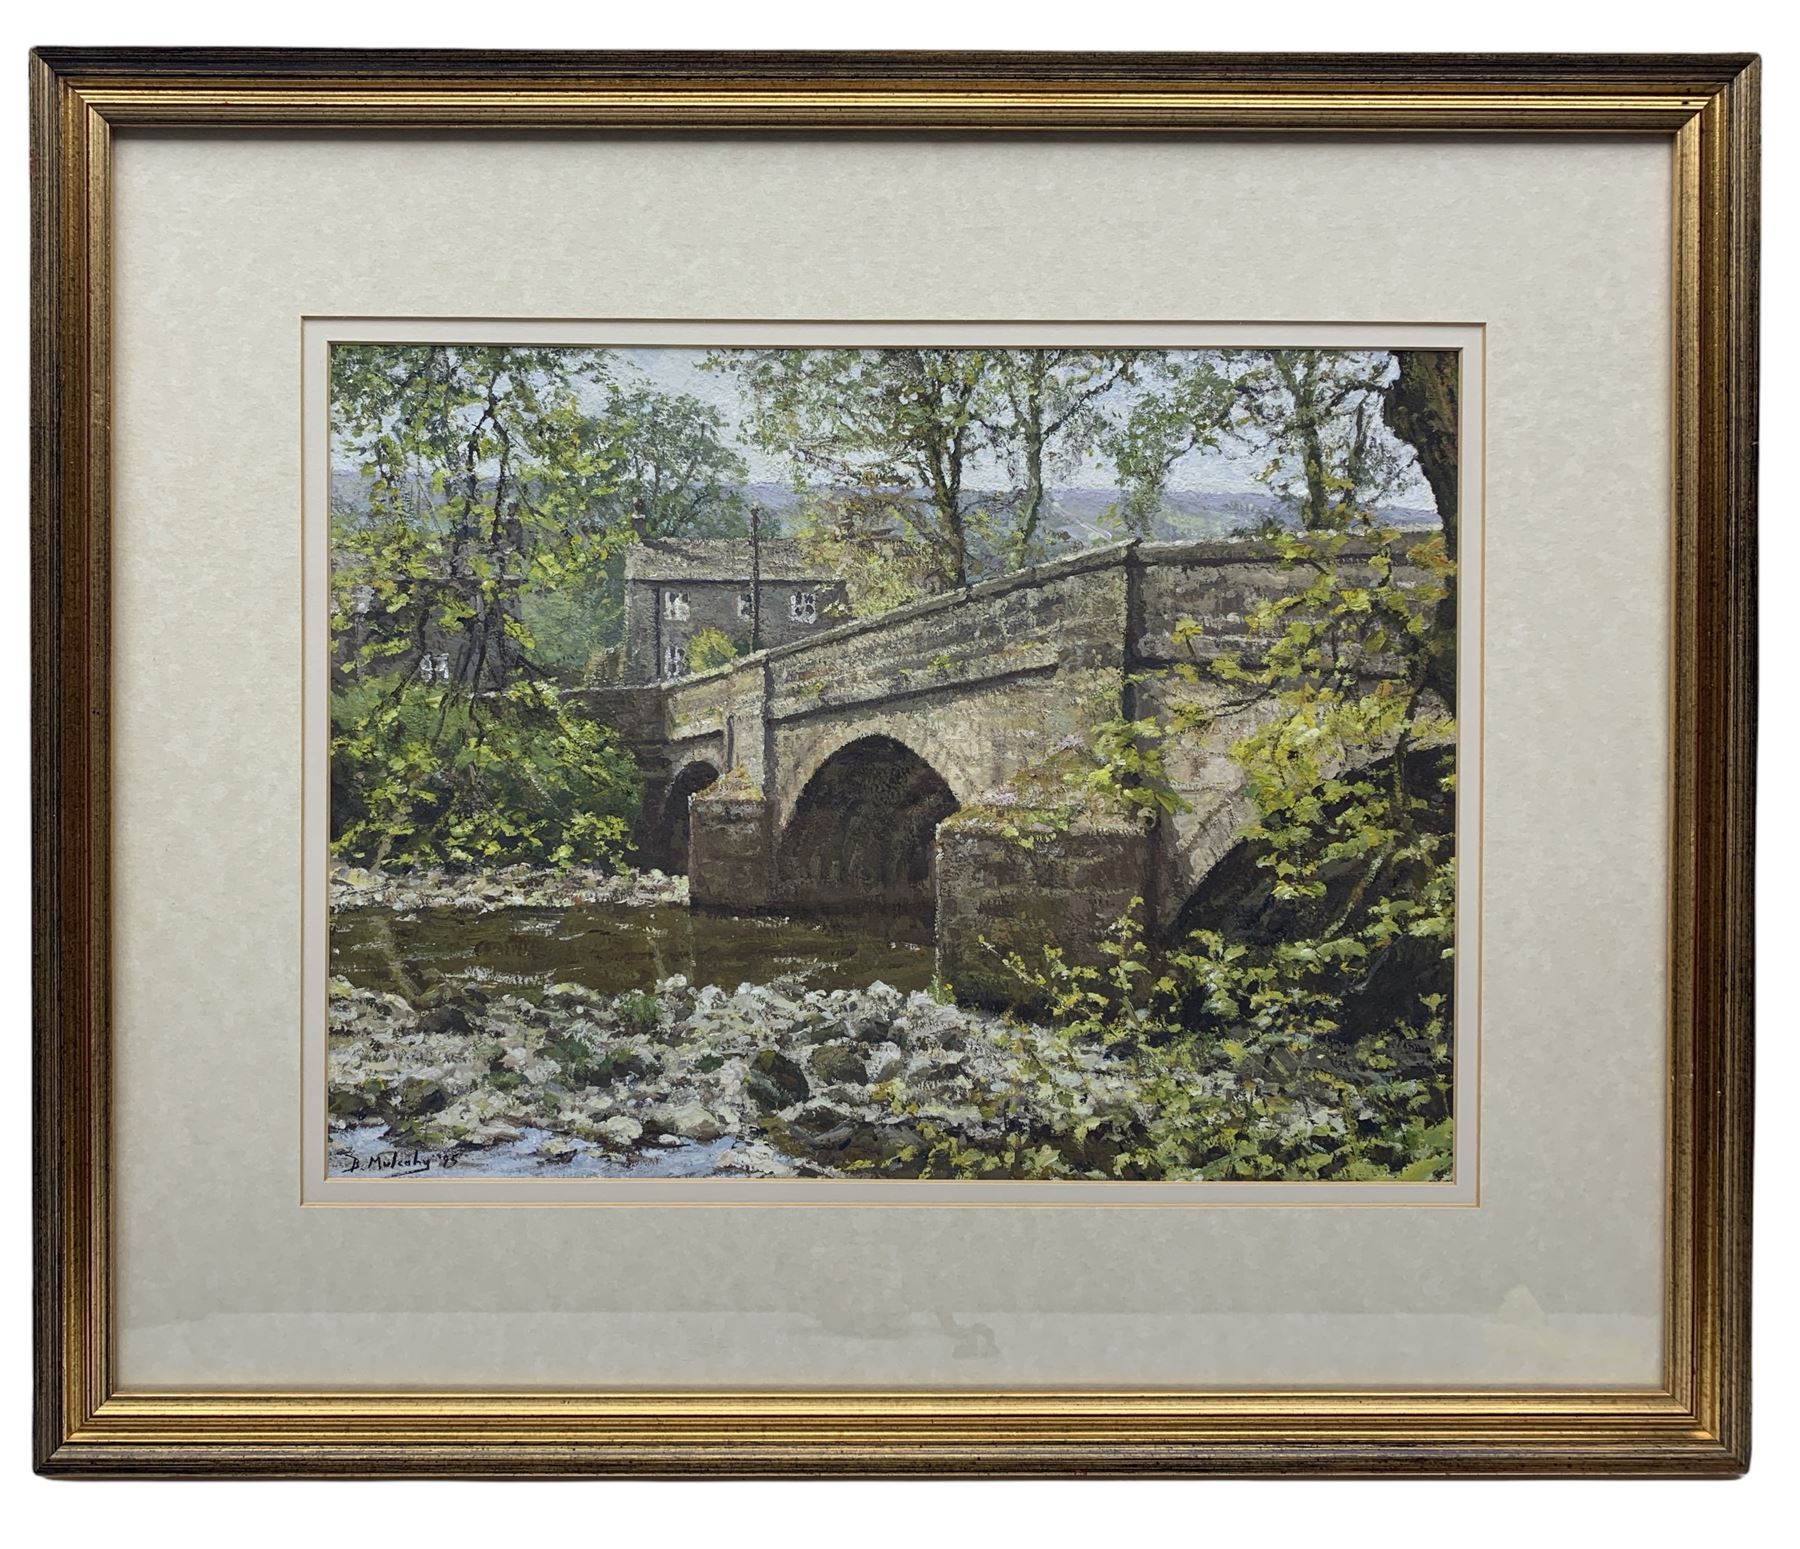 Bruce Mulcahy (British 1955-): Bridge Landscape West Yorkshire - Image 2 of 2